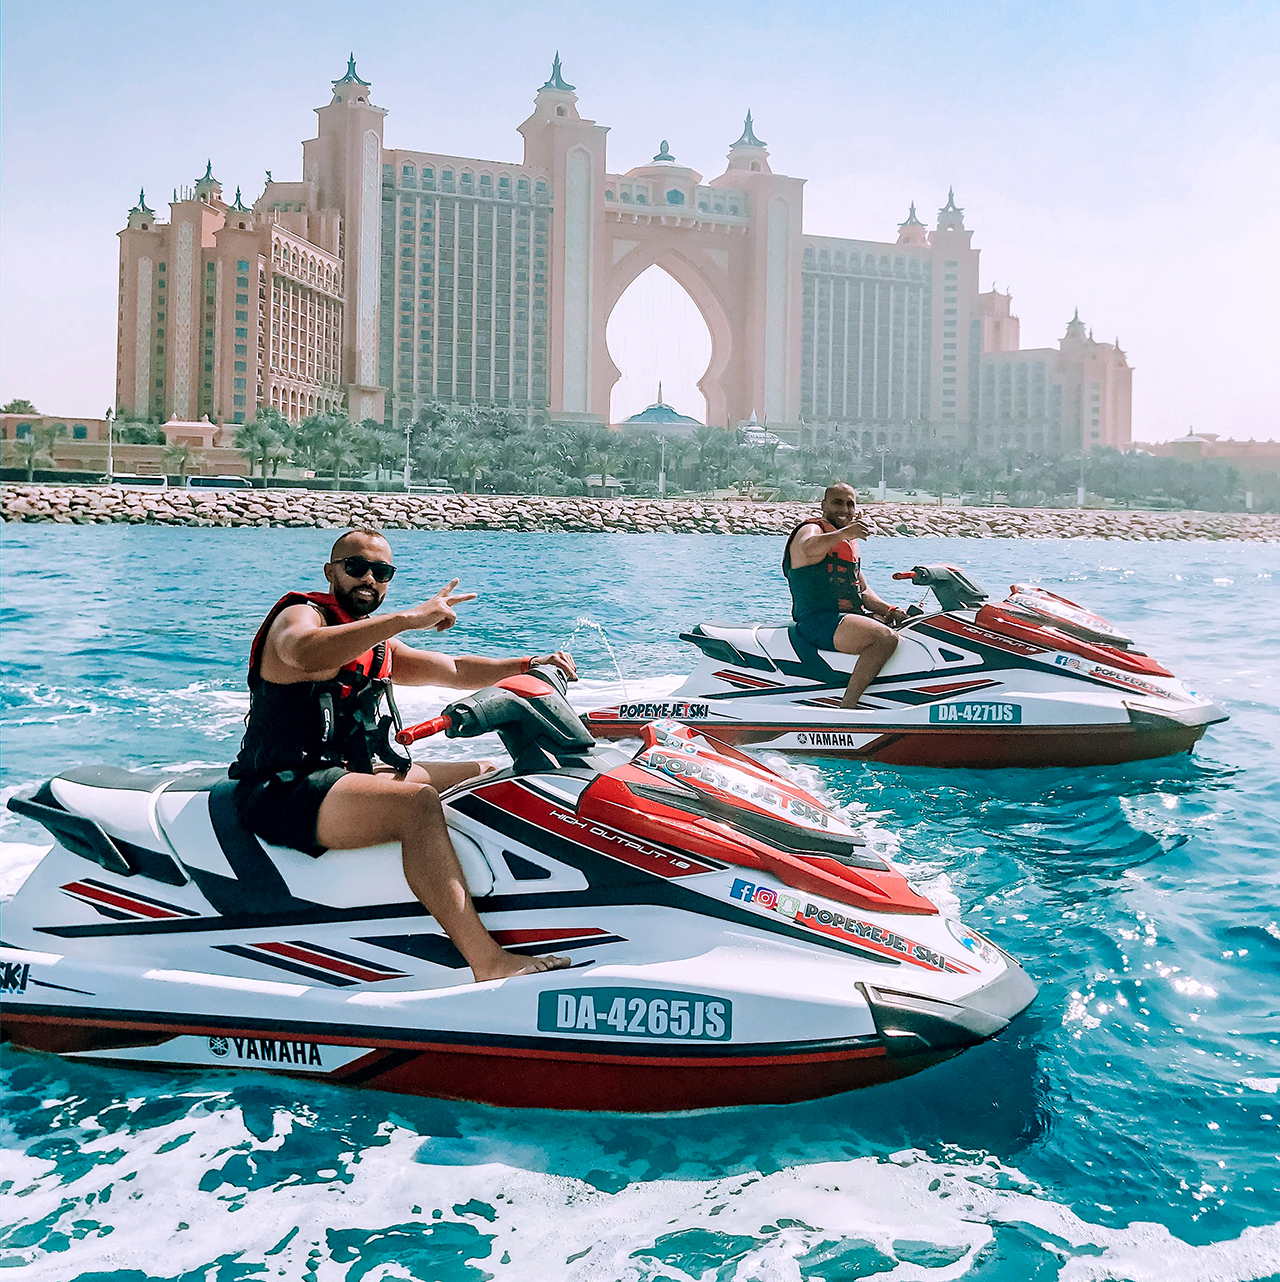 تريب أدفايزر: «جت سكي» دبي التجربة السياحية الأولى عالمياً